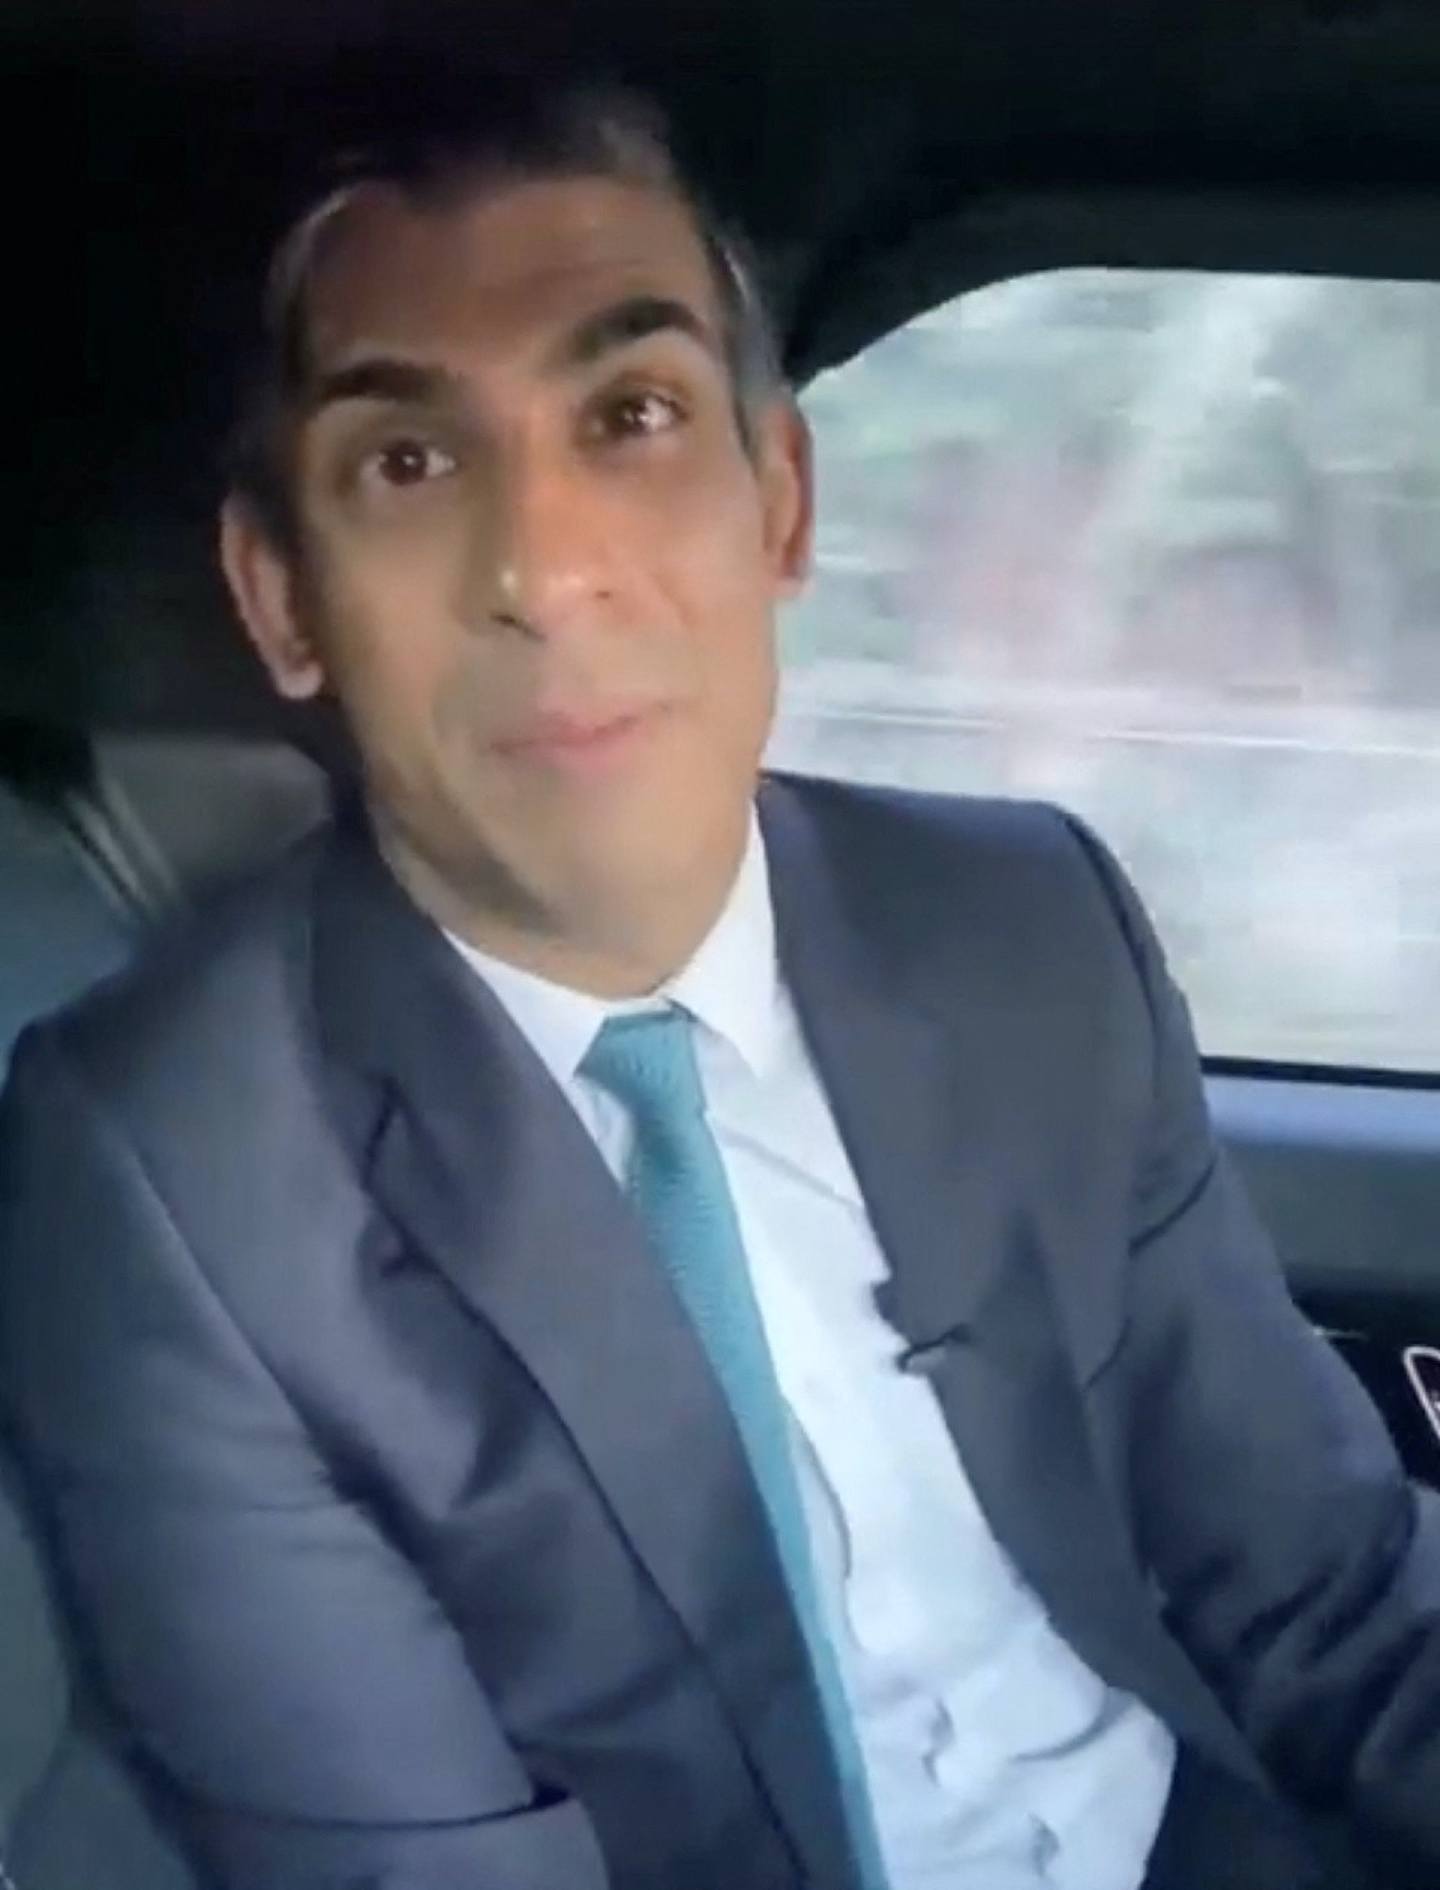 辛伟诚在车内拍片宣传政策，但他没扣安全带却成为焦点。 （Rishi Sunak via Instagram/via REUTERS）